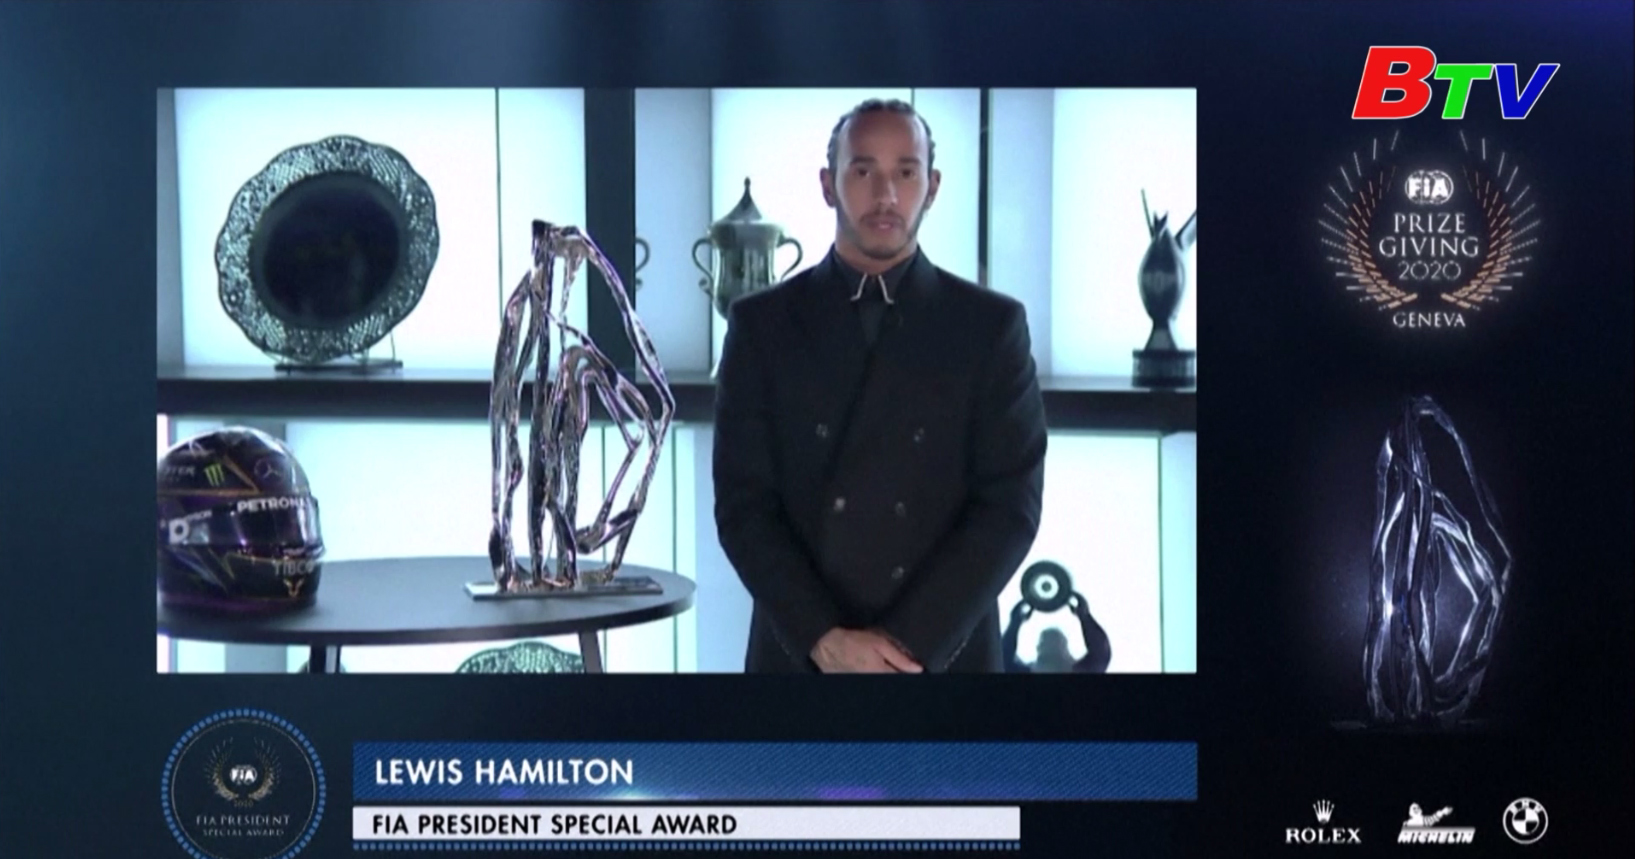 Lewis Hamilton giành cú đúp giải thưởng FIA